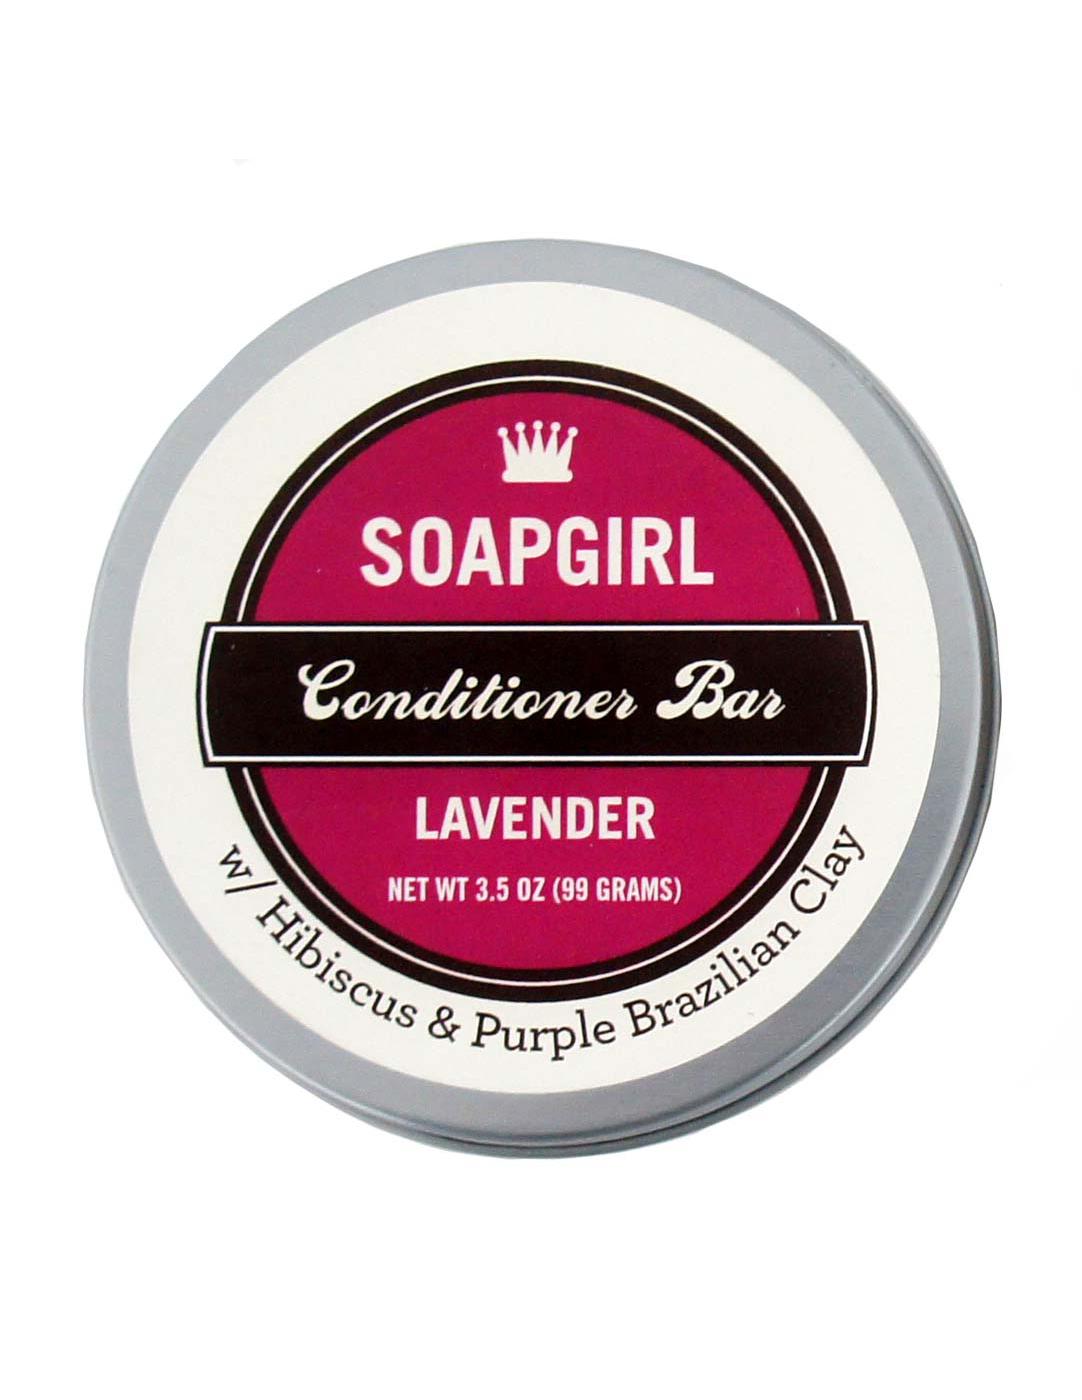 Soapgirl Conditioner Bar - Lavender; image 1 of 2